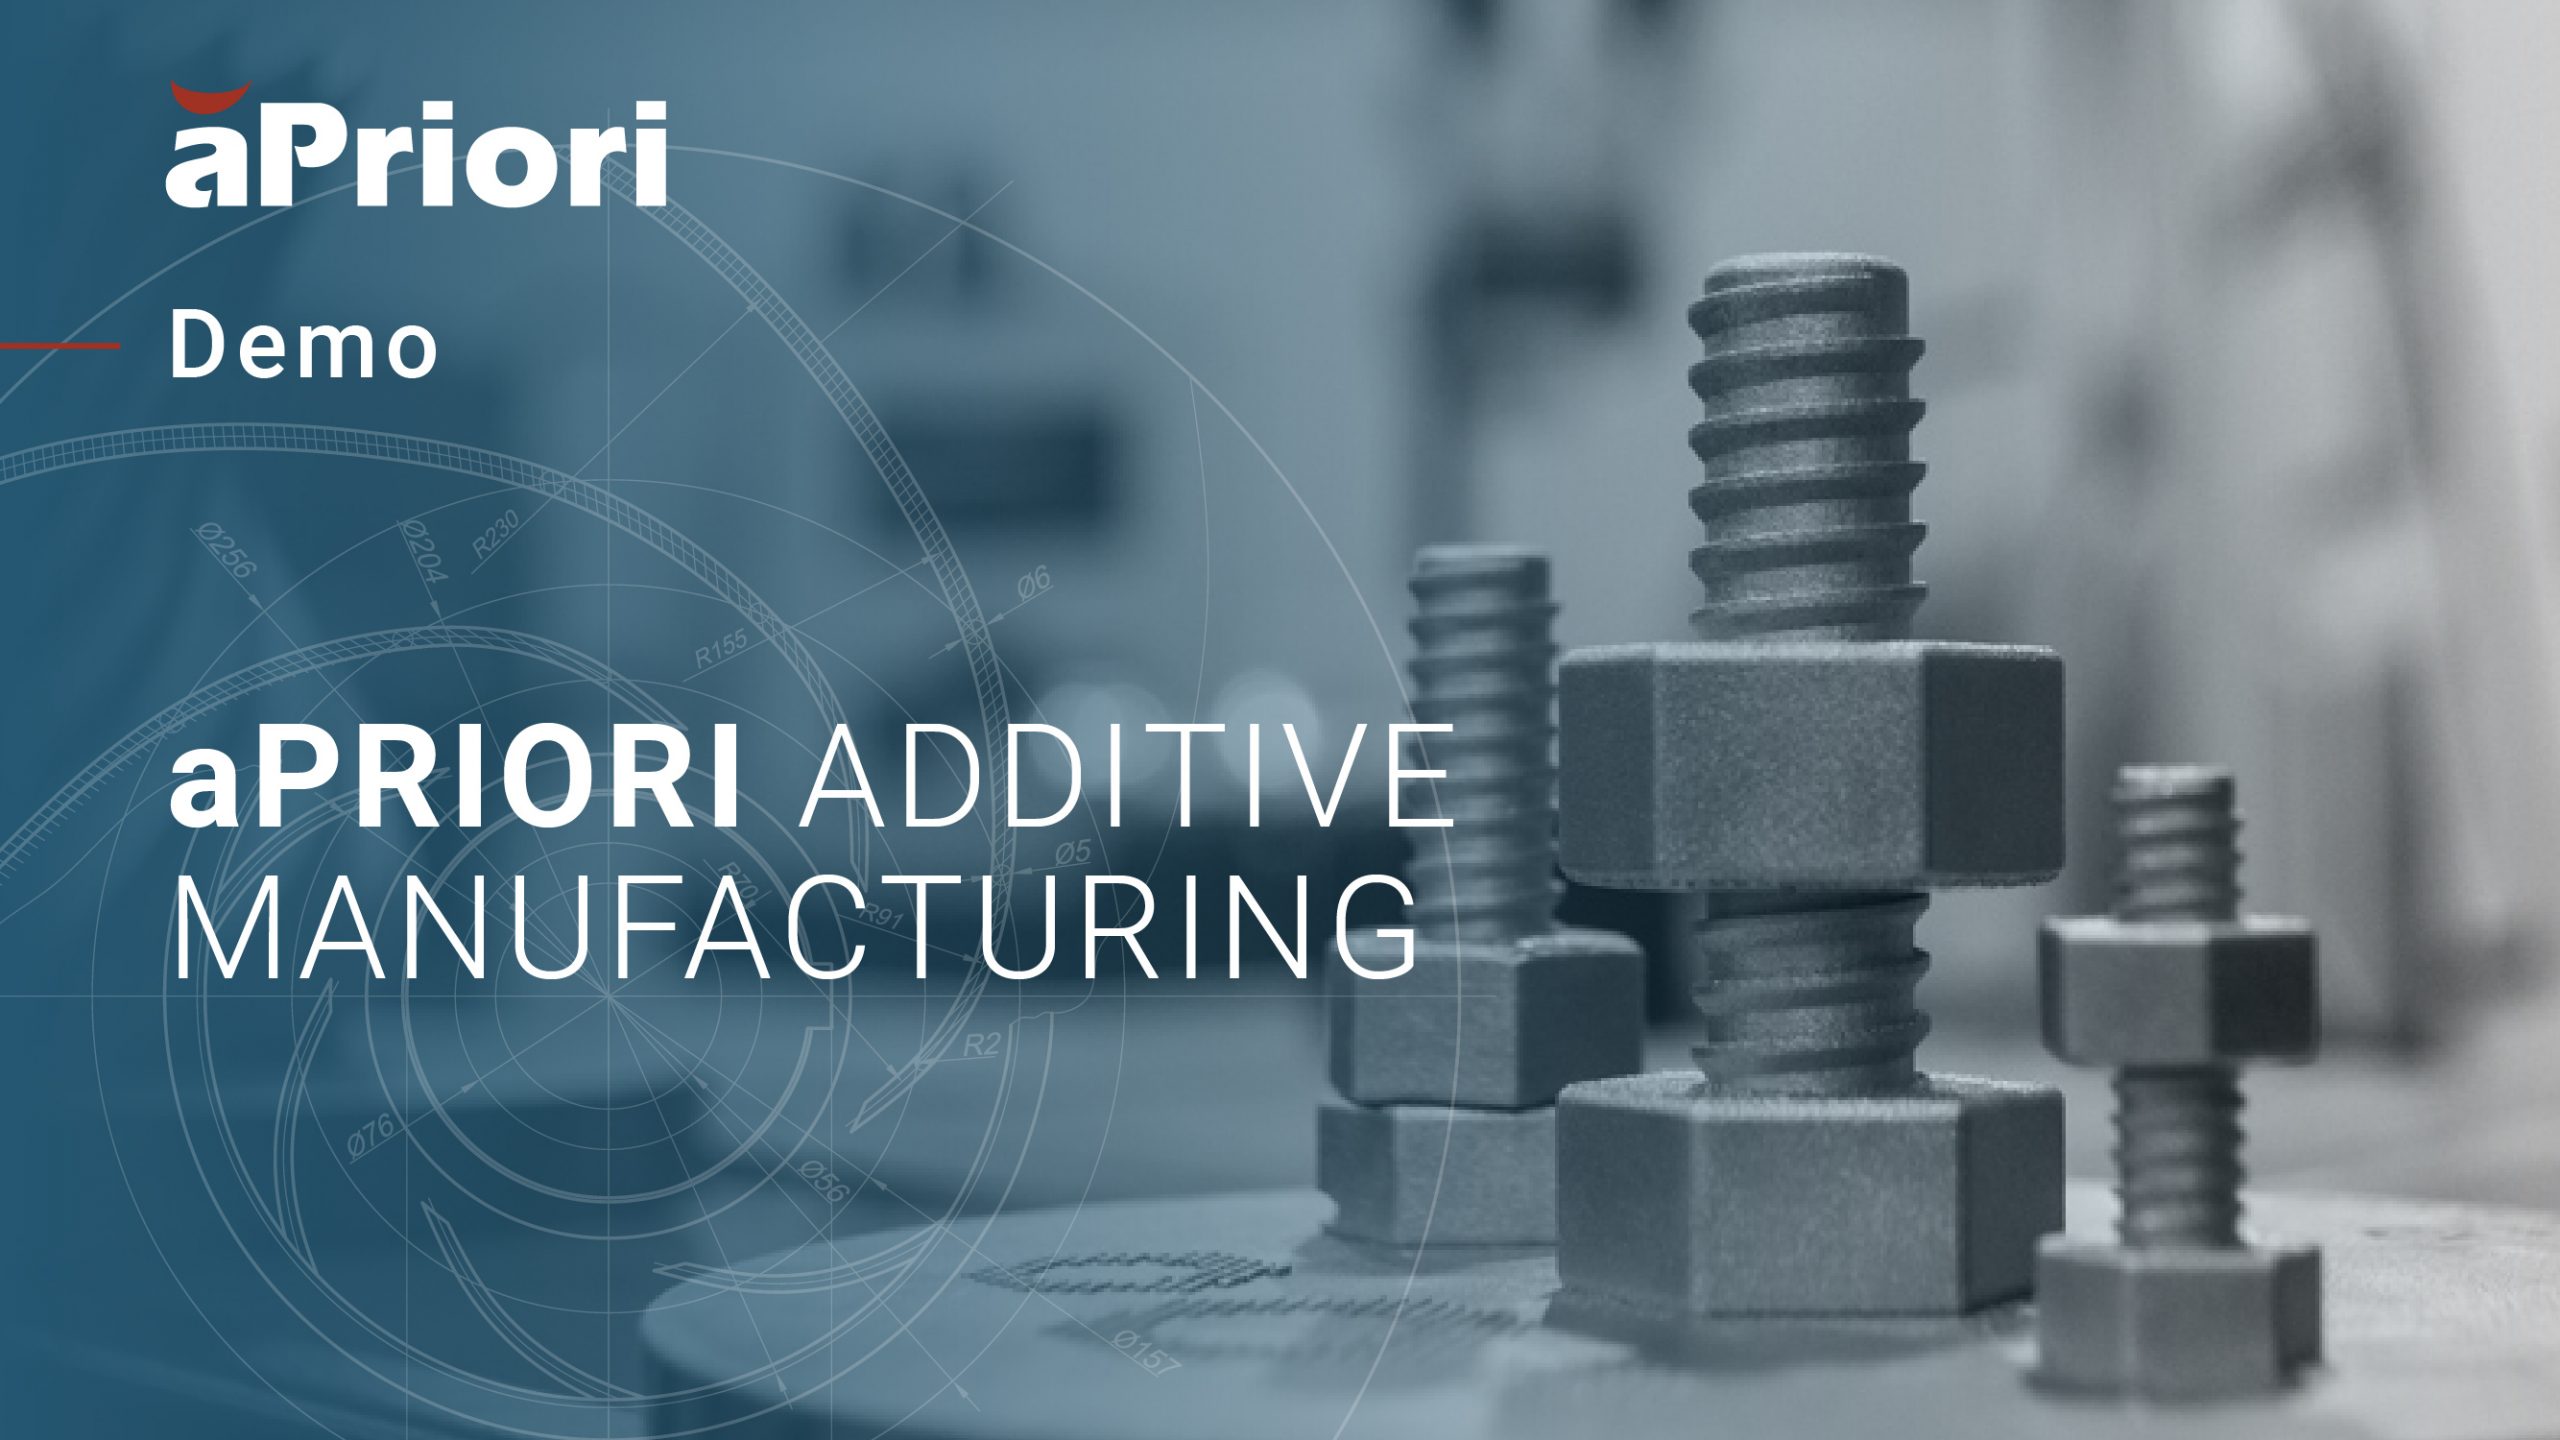 aPriori additive manufacturing